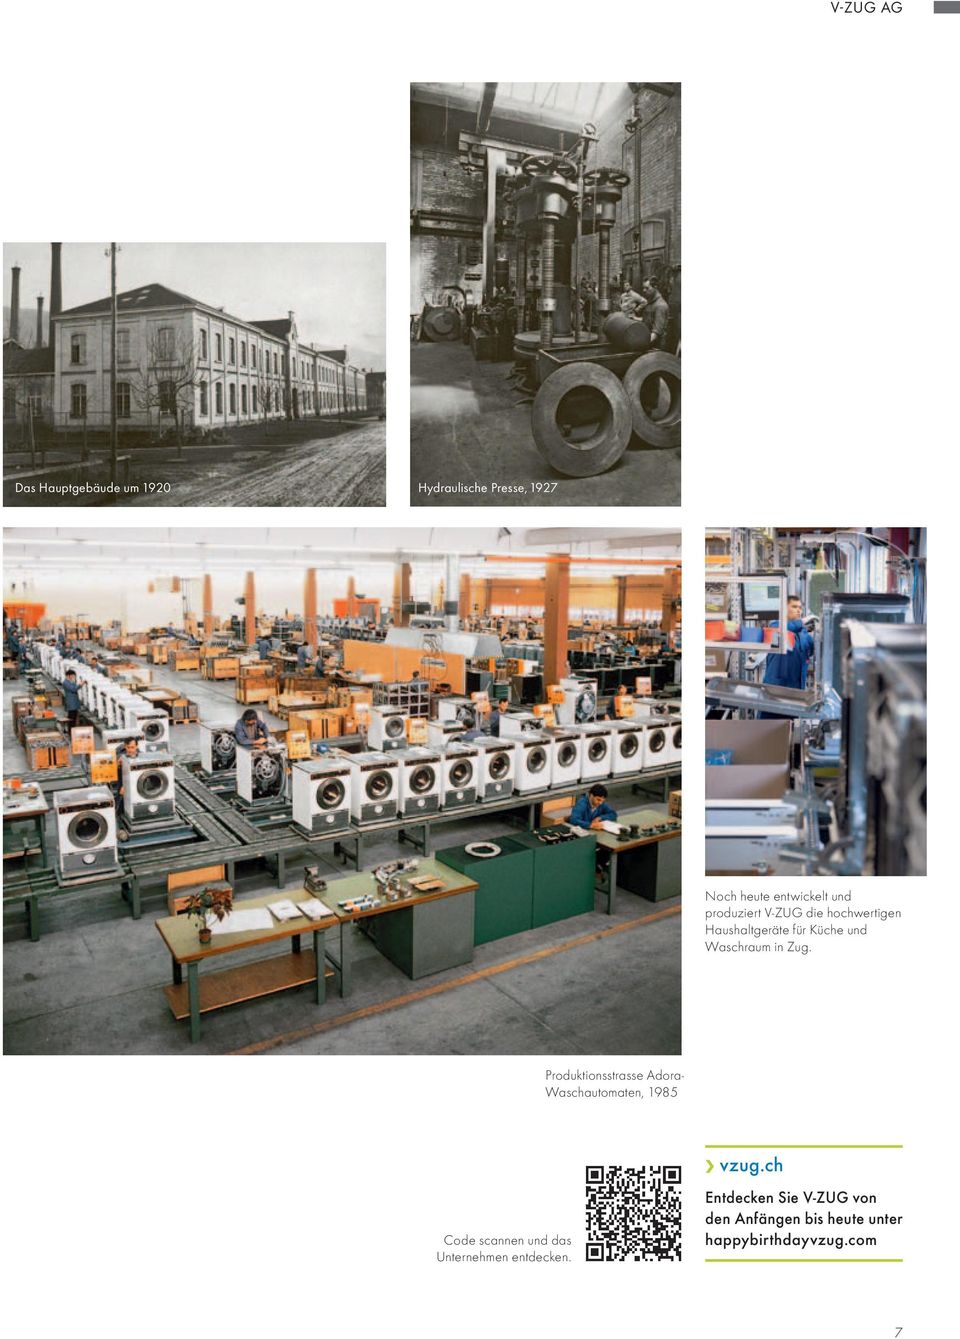 Produktionsstrasse Adora- Waschautomaten, 1985 Code scannen und das Unternehmen